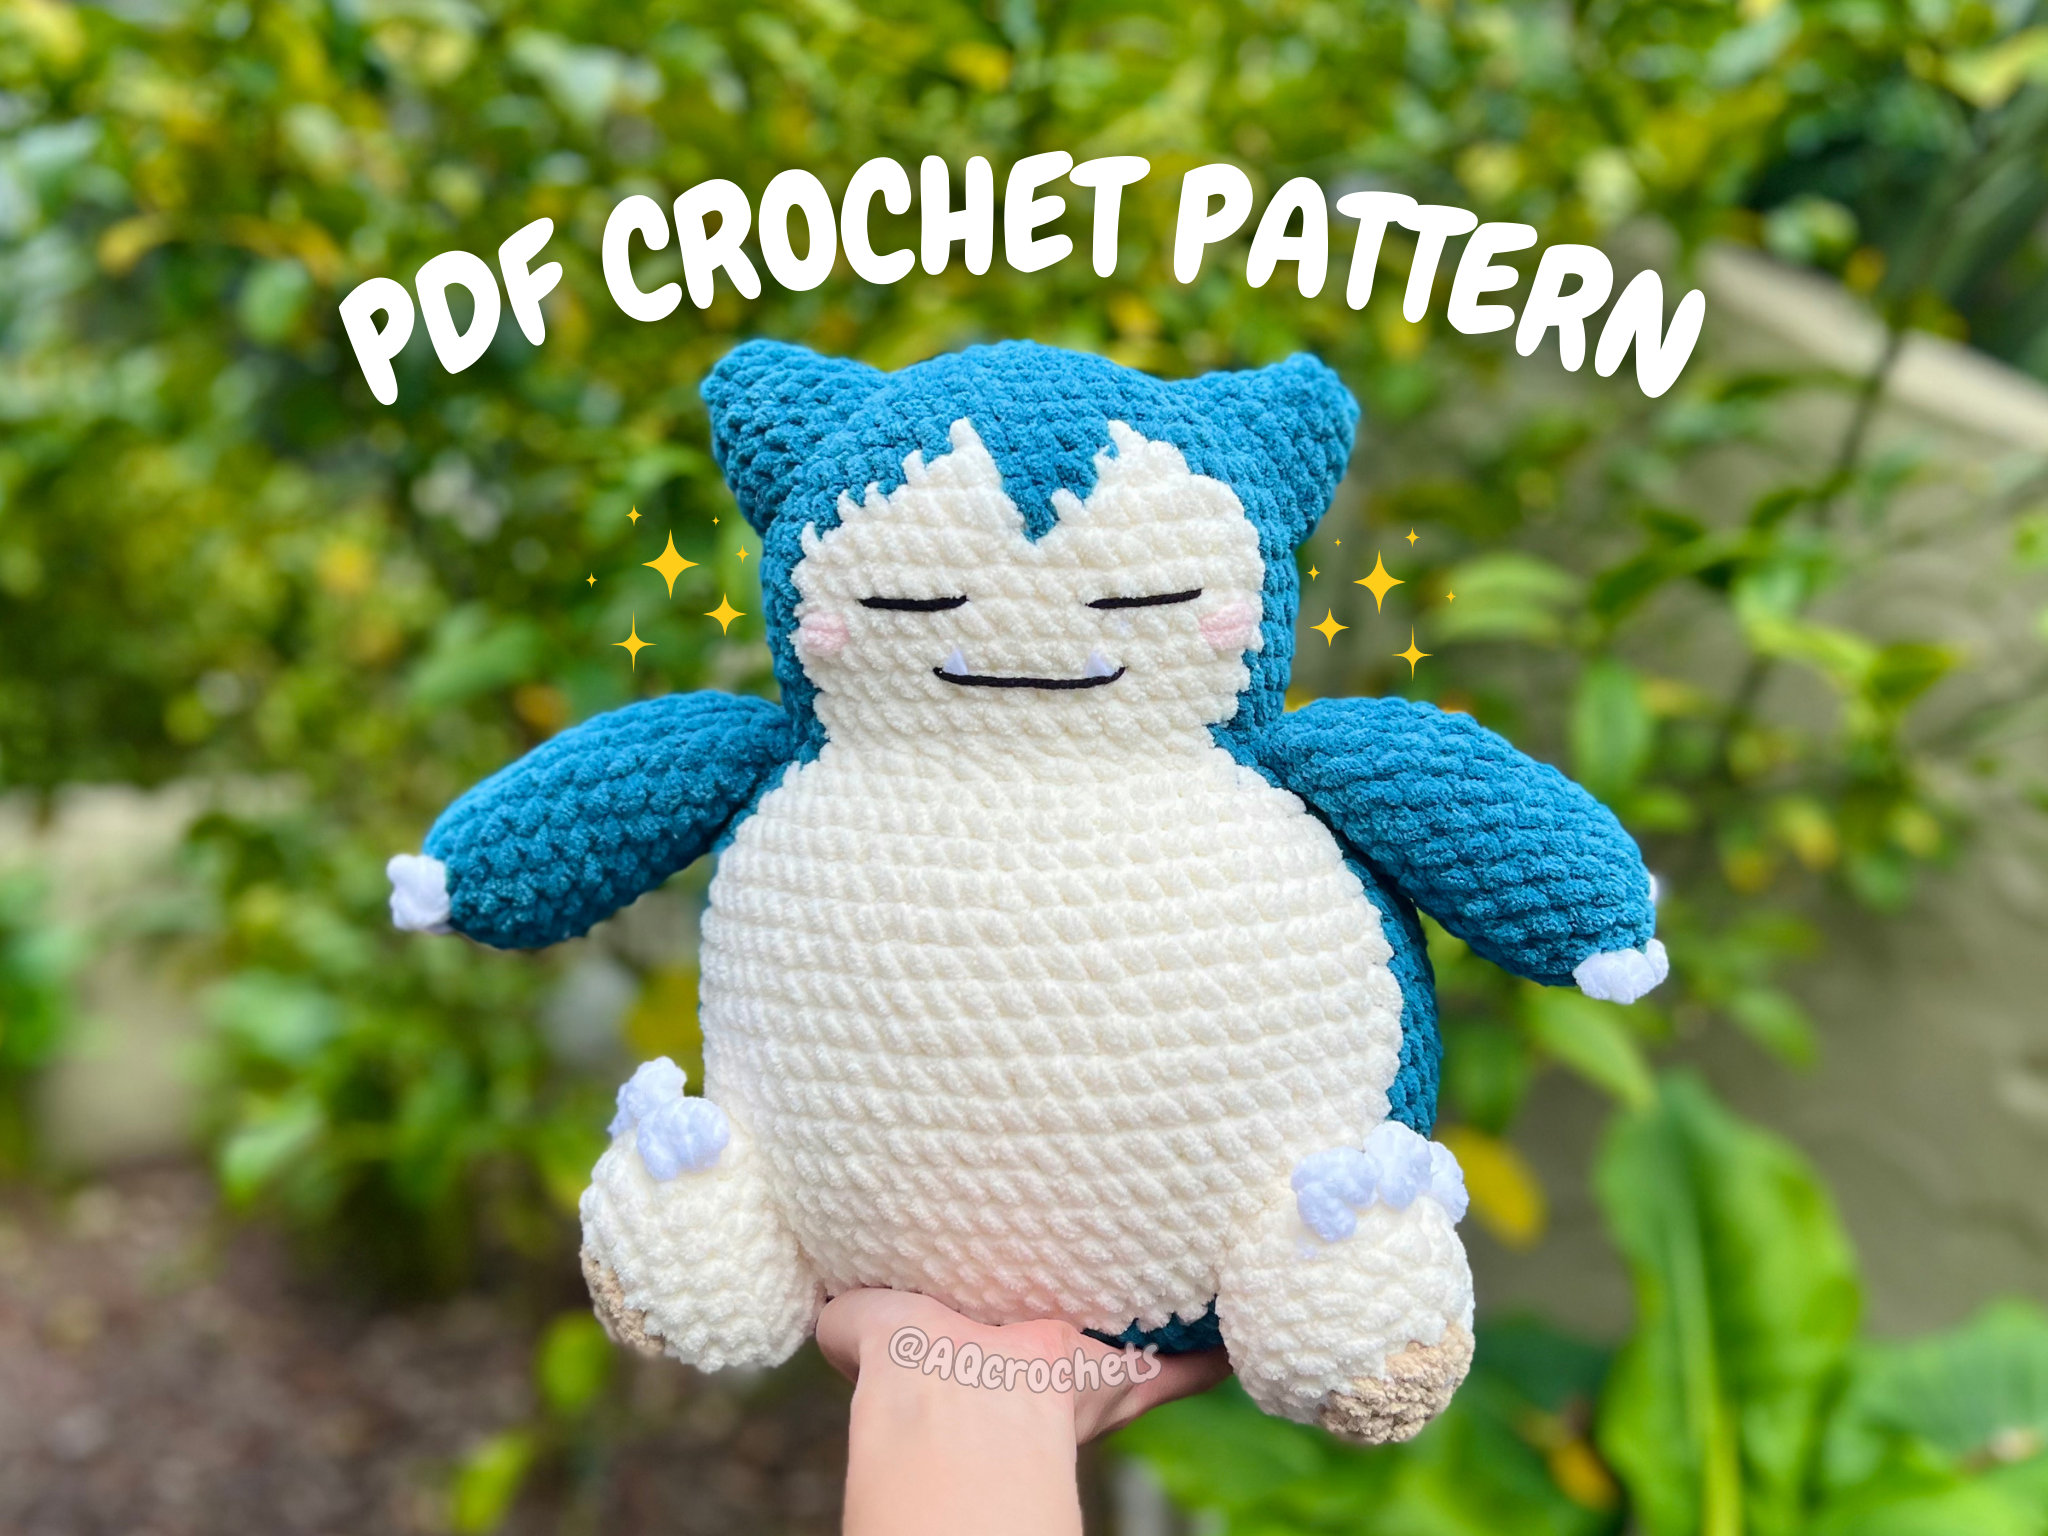 Pokémon Crochet Snorlax Kit